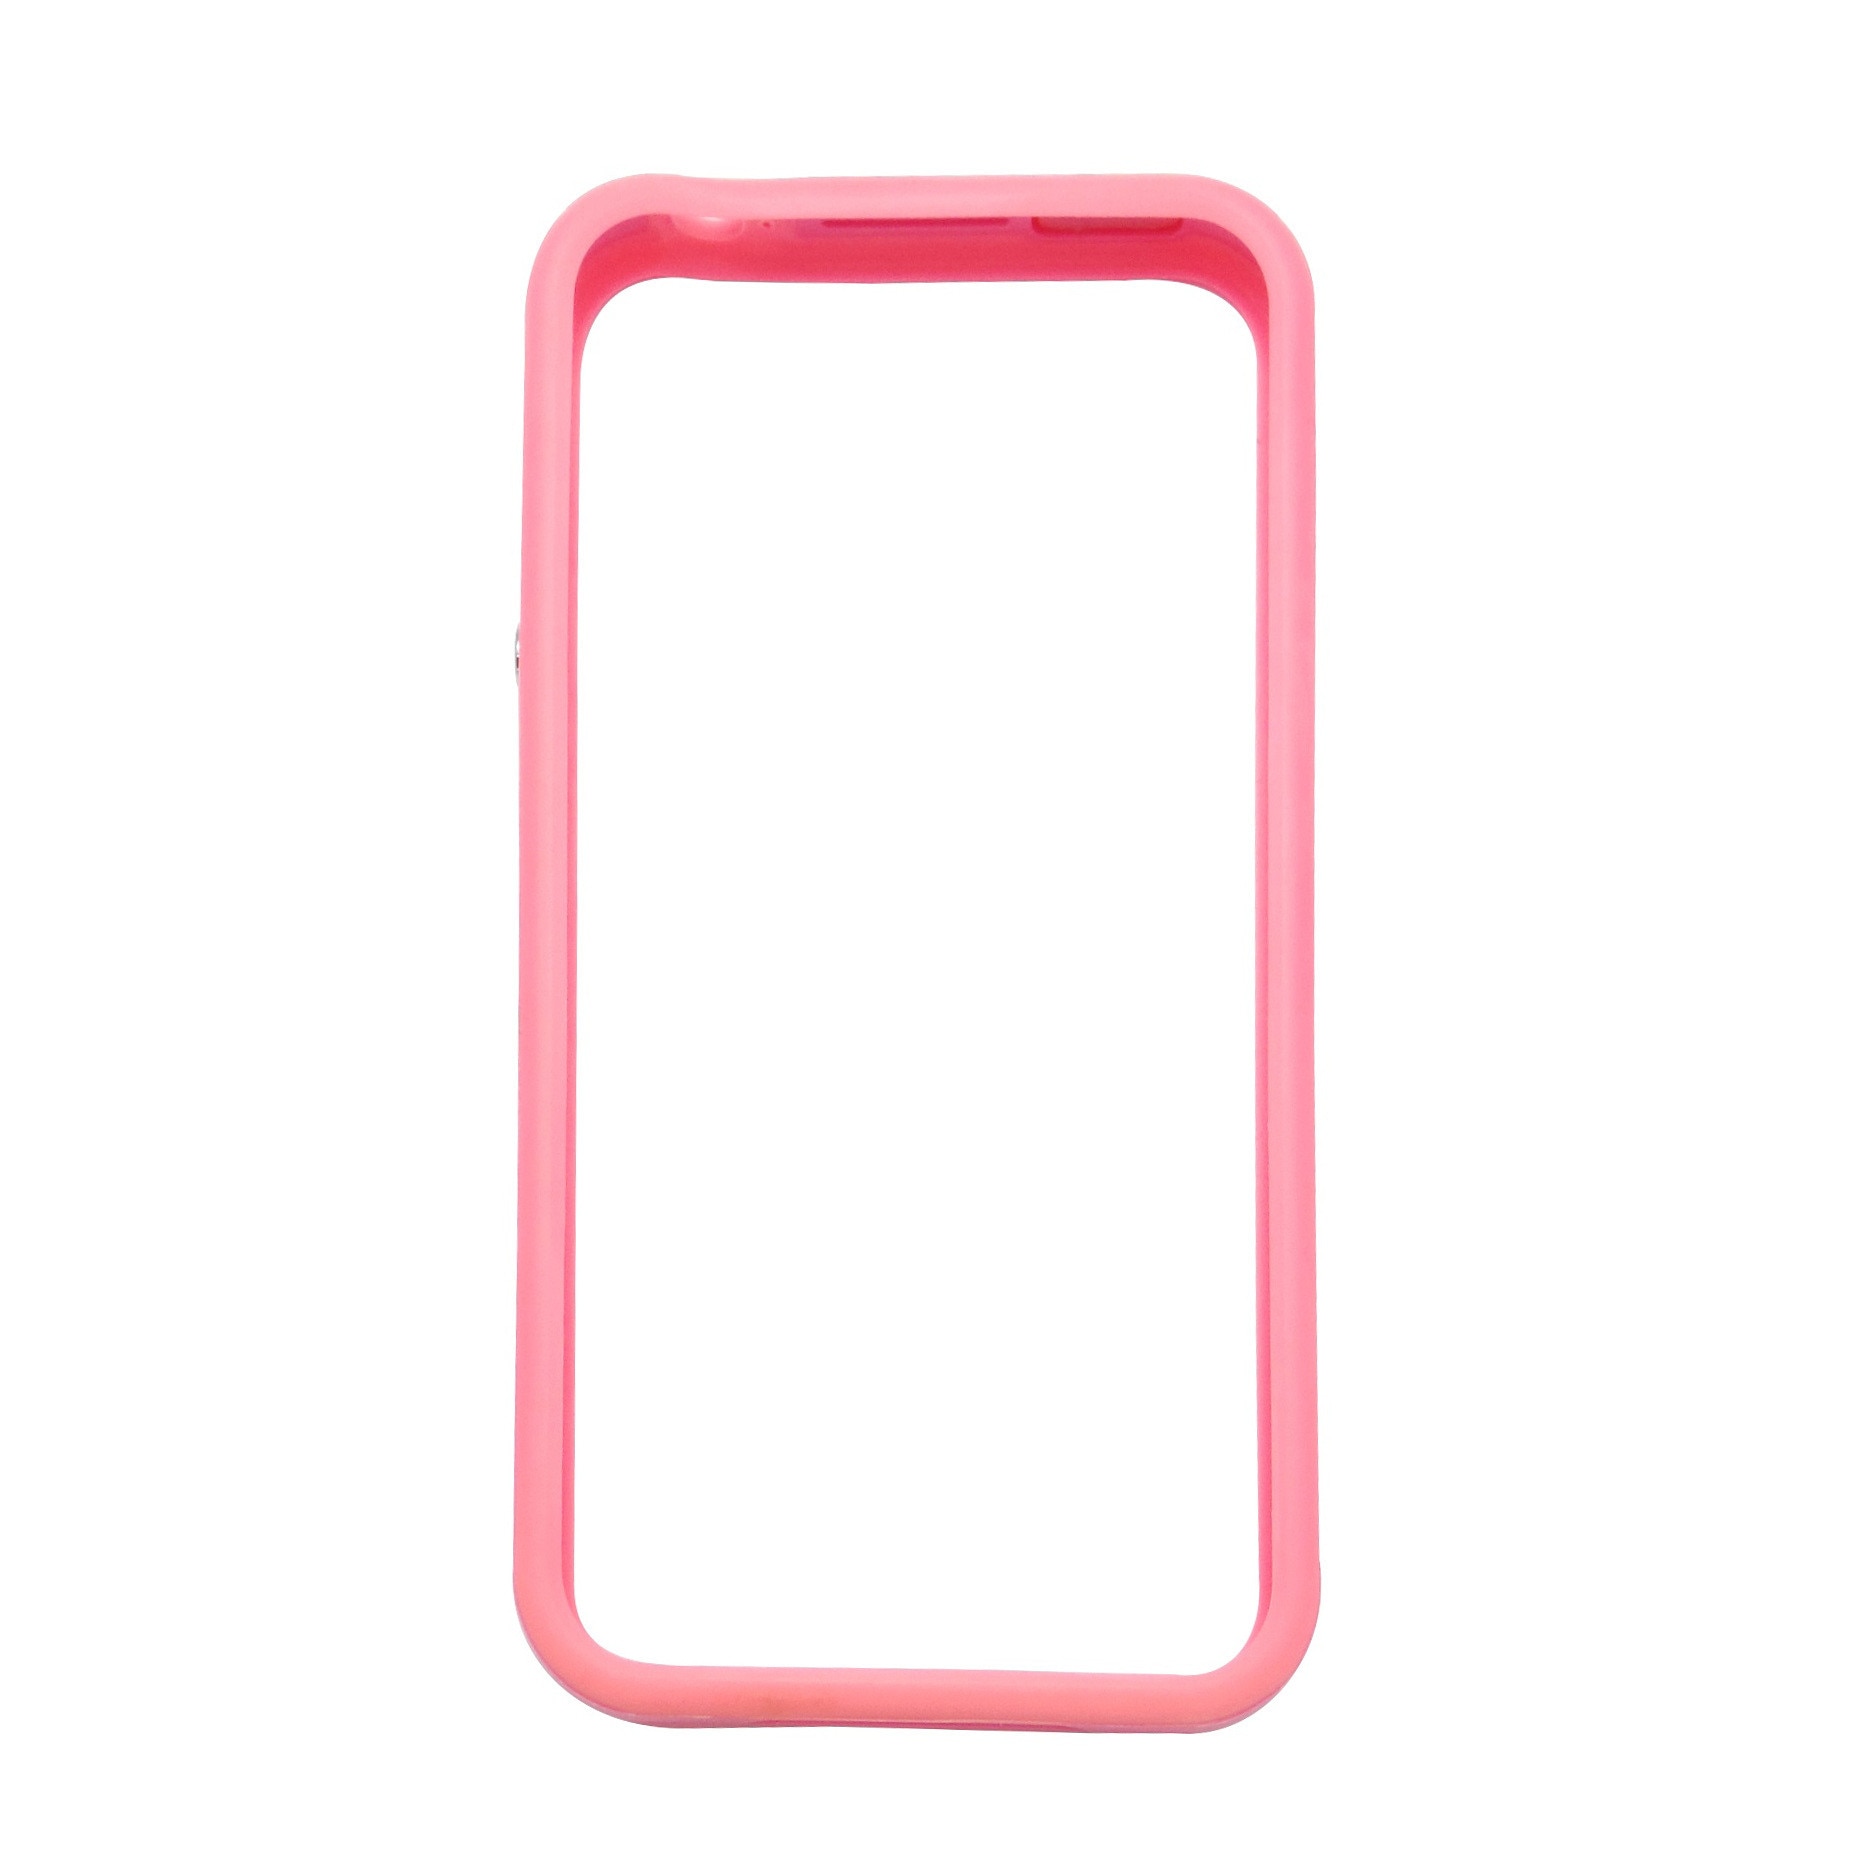 she is Ham Persecute Husa Bumper roz pentru Apple iPhone 4, 4S - eMAG.ro